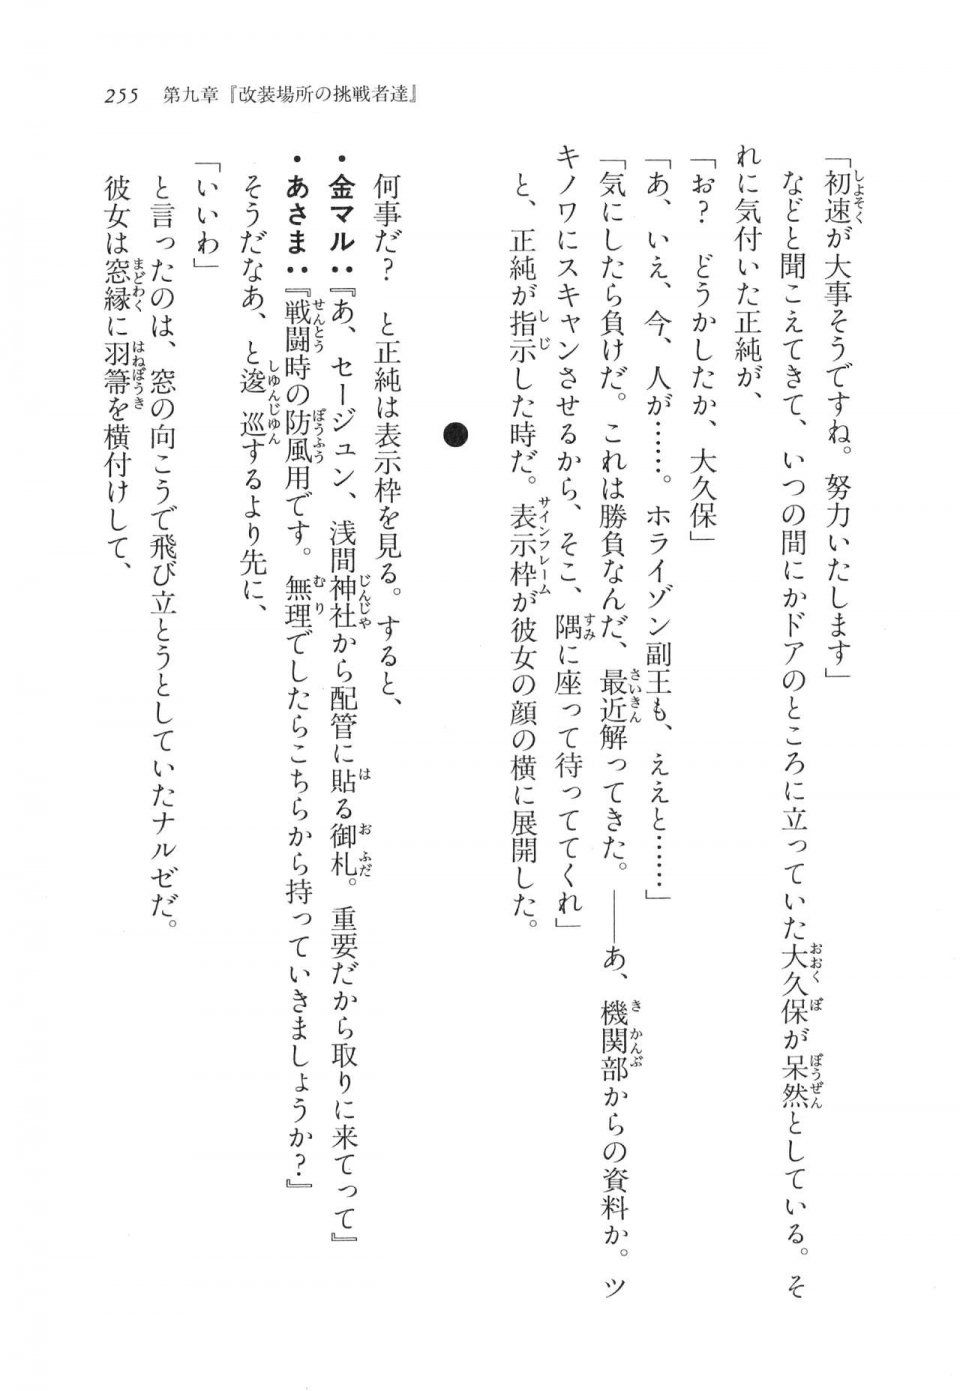 Kyoukai Senjou no Horizon LN Vol 11(5A) - Photo #255